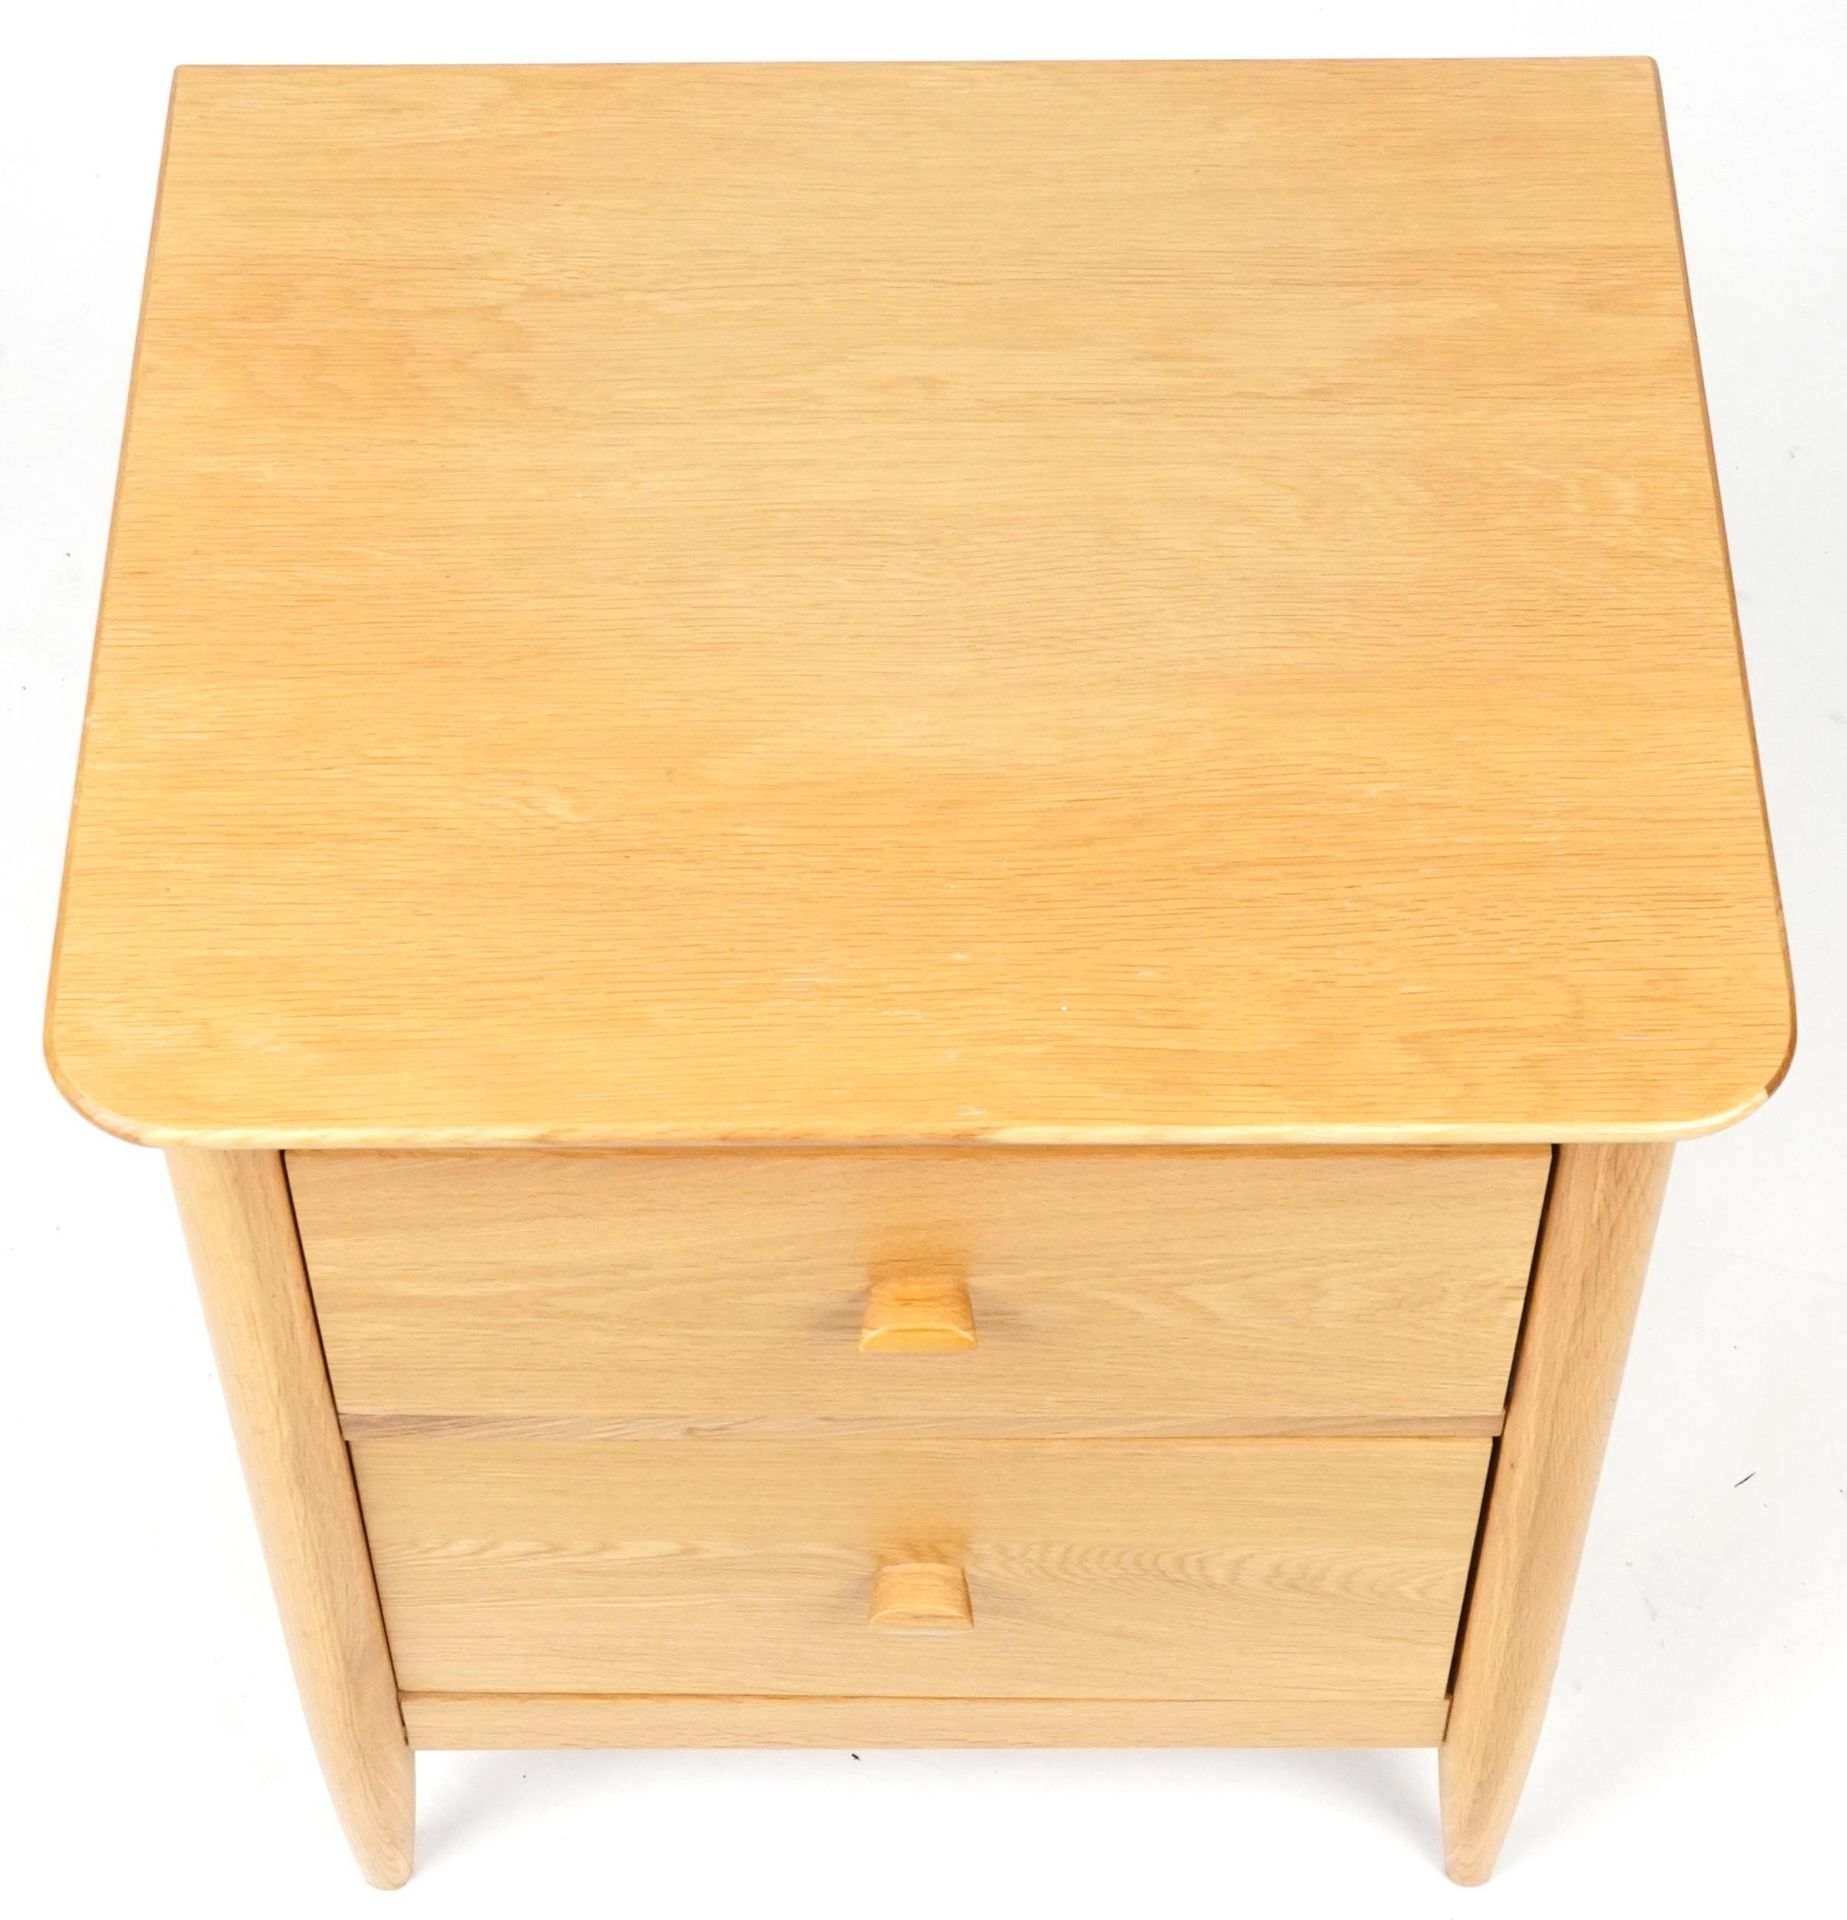 Ercol Teramo contemporary light oak two drawer bedside chest, 60cm H x 53cm W x 47cm D - Bild 3 aus 6